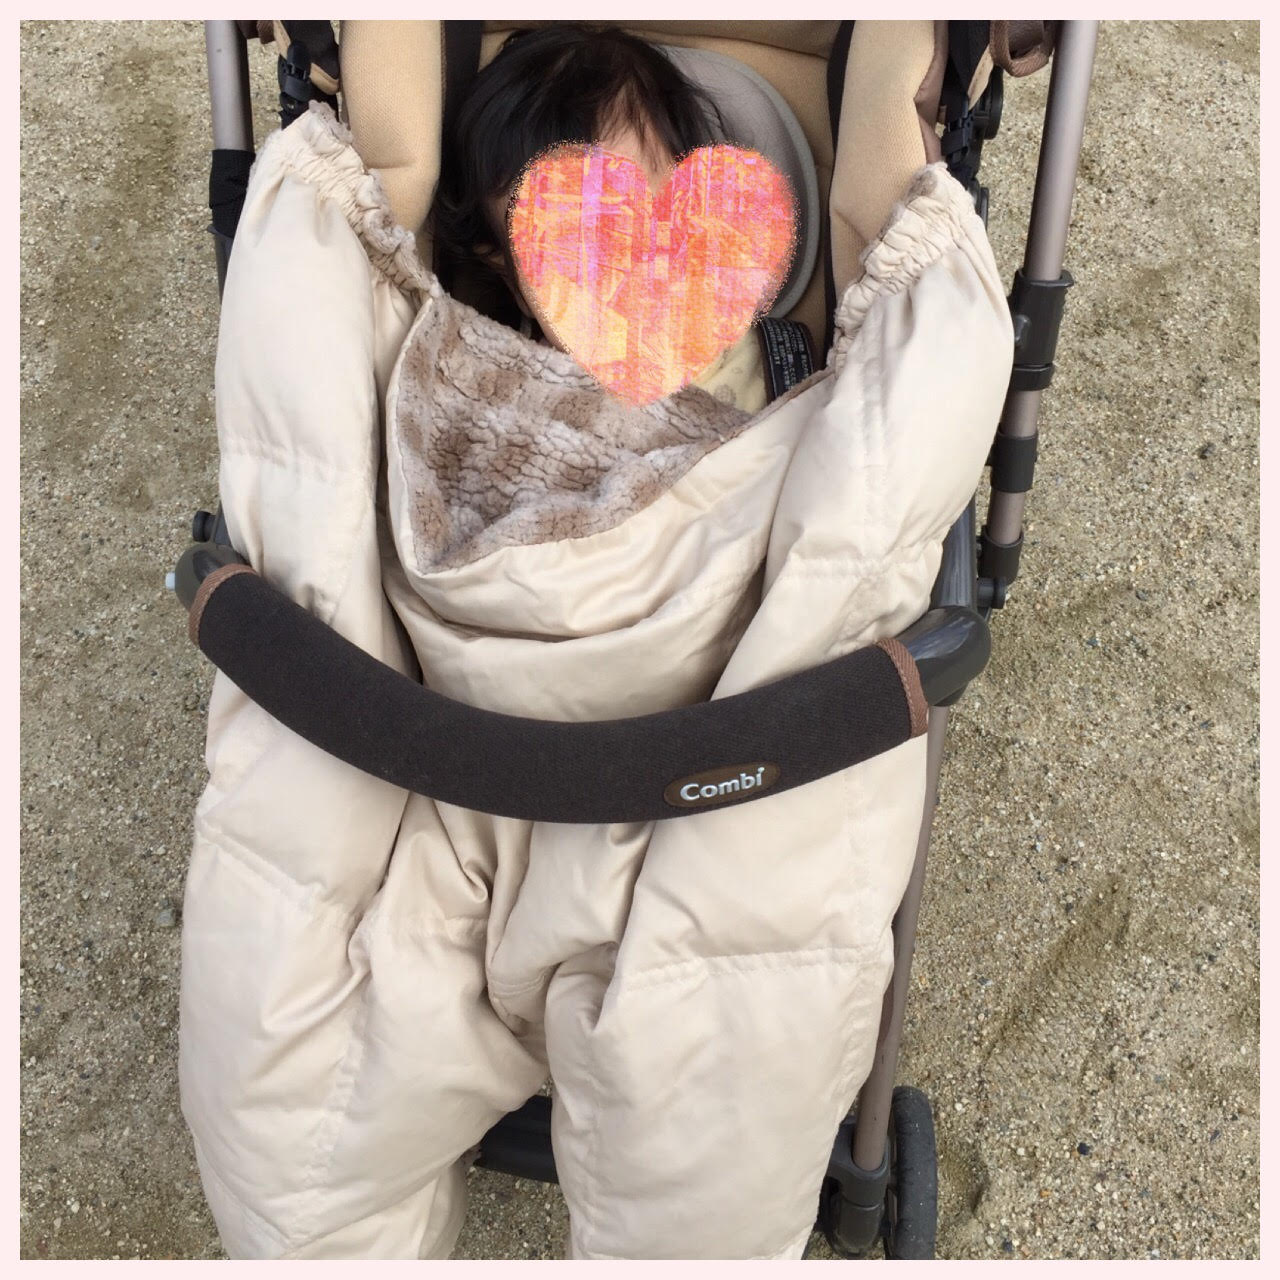 赤ちゃん冬のお散歩の服装 抱っこ紐とベビーカーの防寒はそれぞれどうすればいい 主婦とシンママ情報収集ブログ